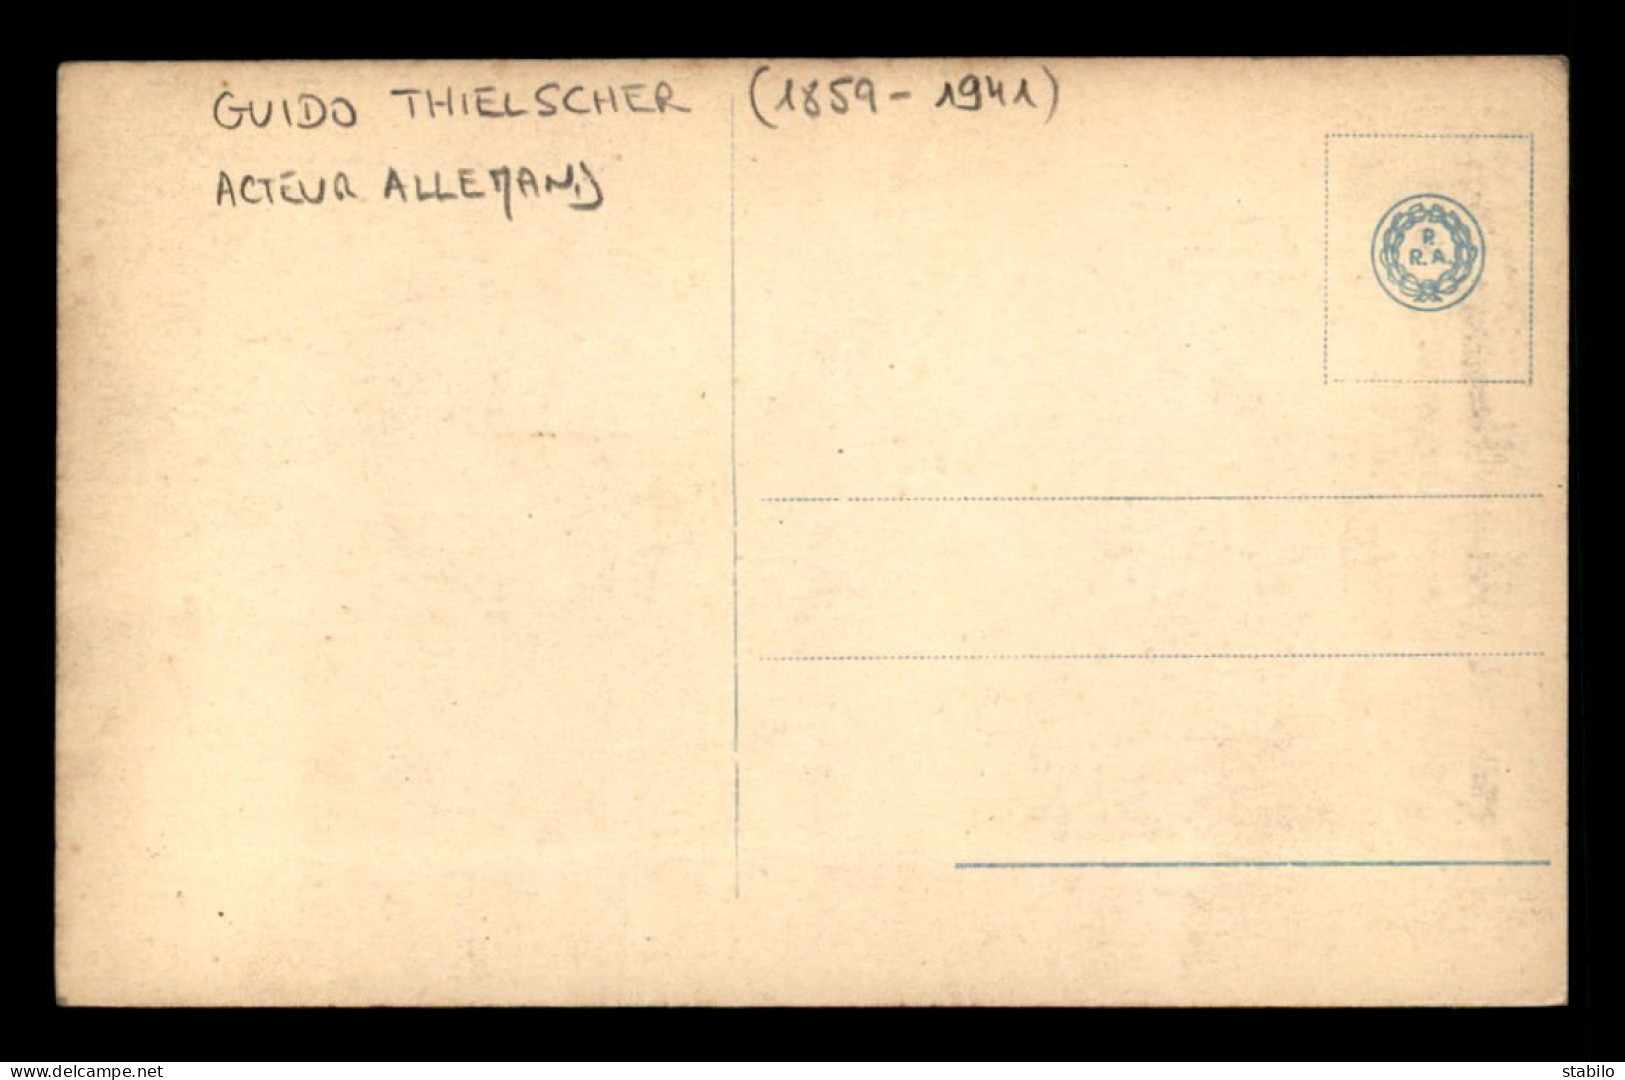 ARTISTES - GUIDO THIELSCHER (1859-1941) - ACTEUR ALLEMAND - Artiesten